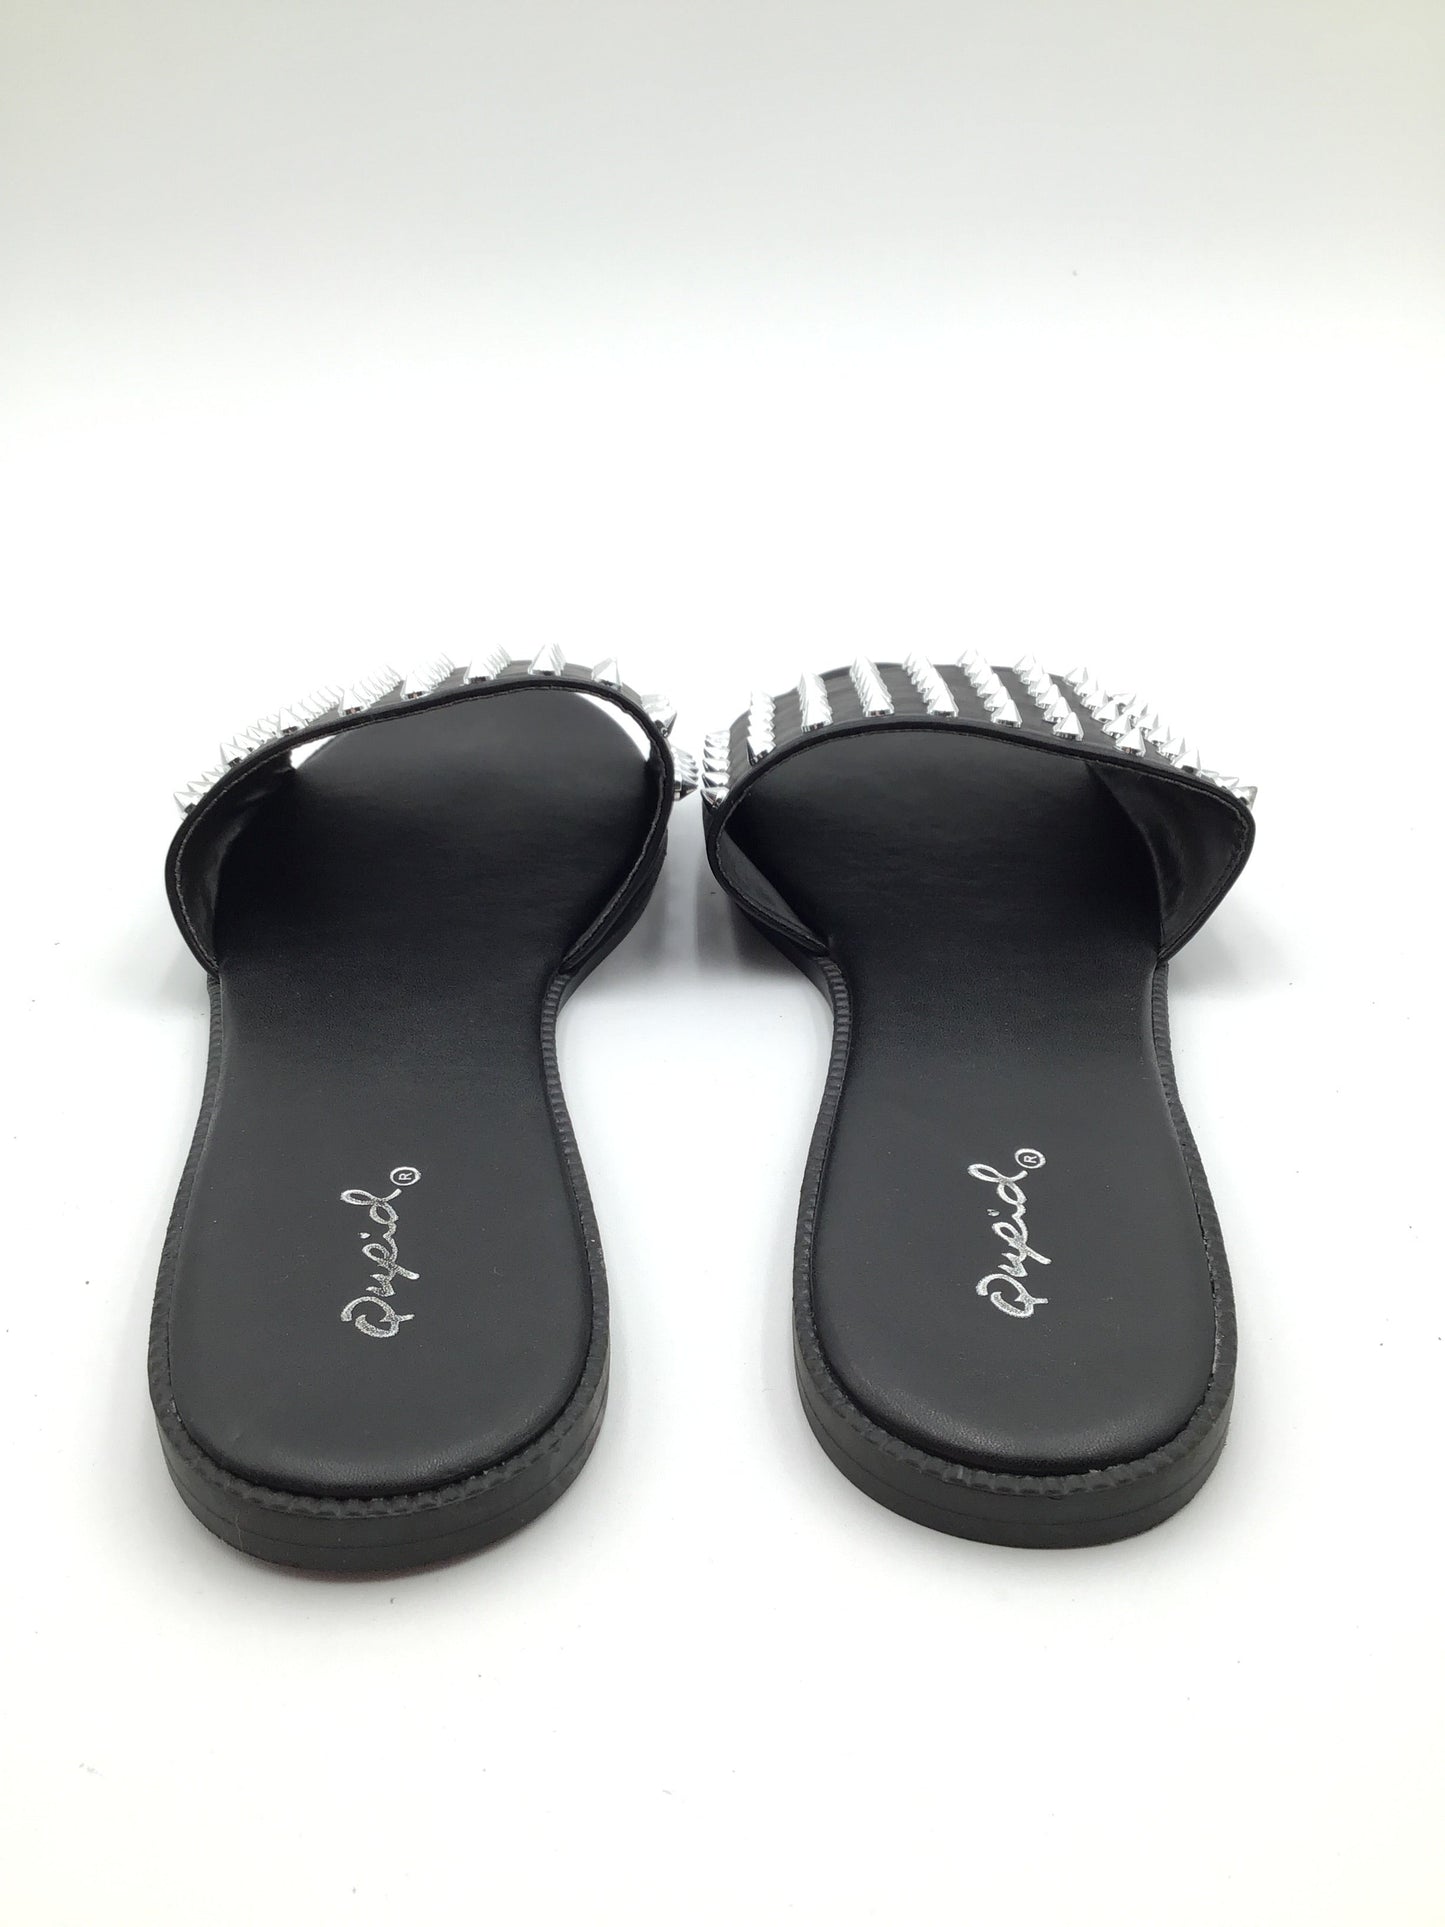 Black Sandals Flats Qupid, Size 10